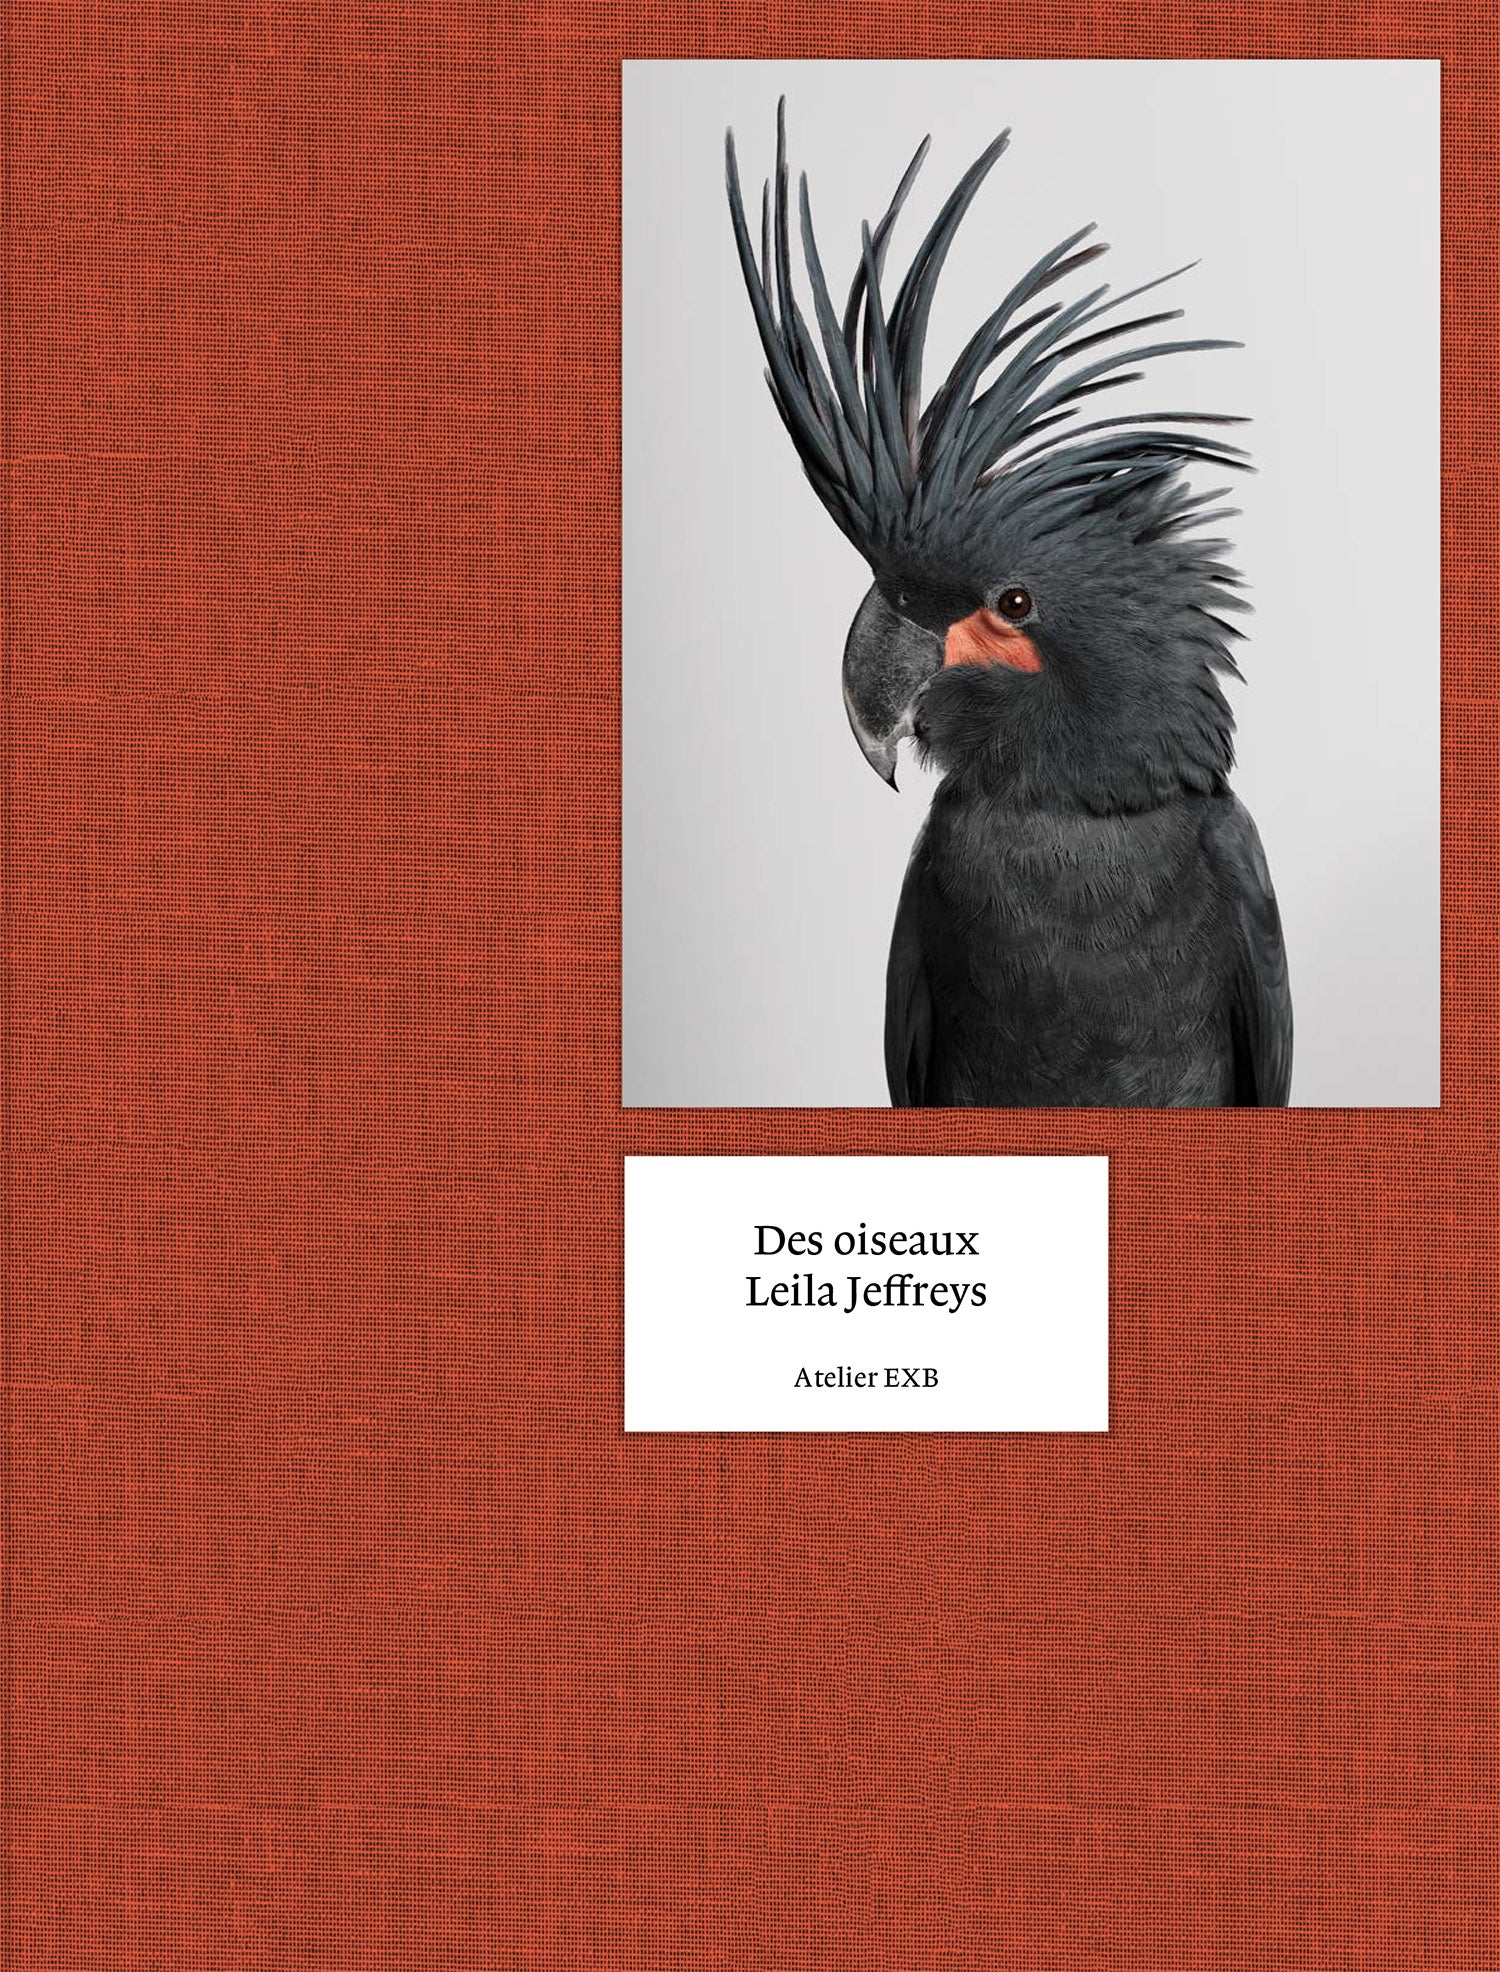 Leila Jeffreys: On Birds (Des oiseaux) cover